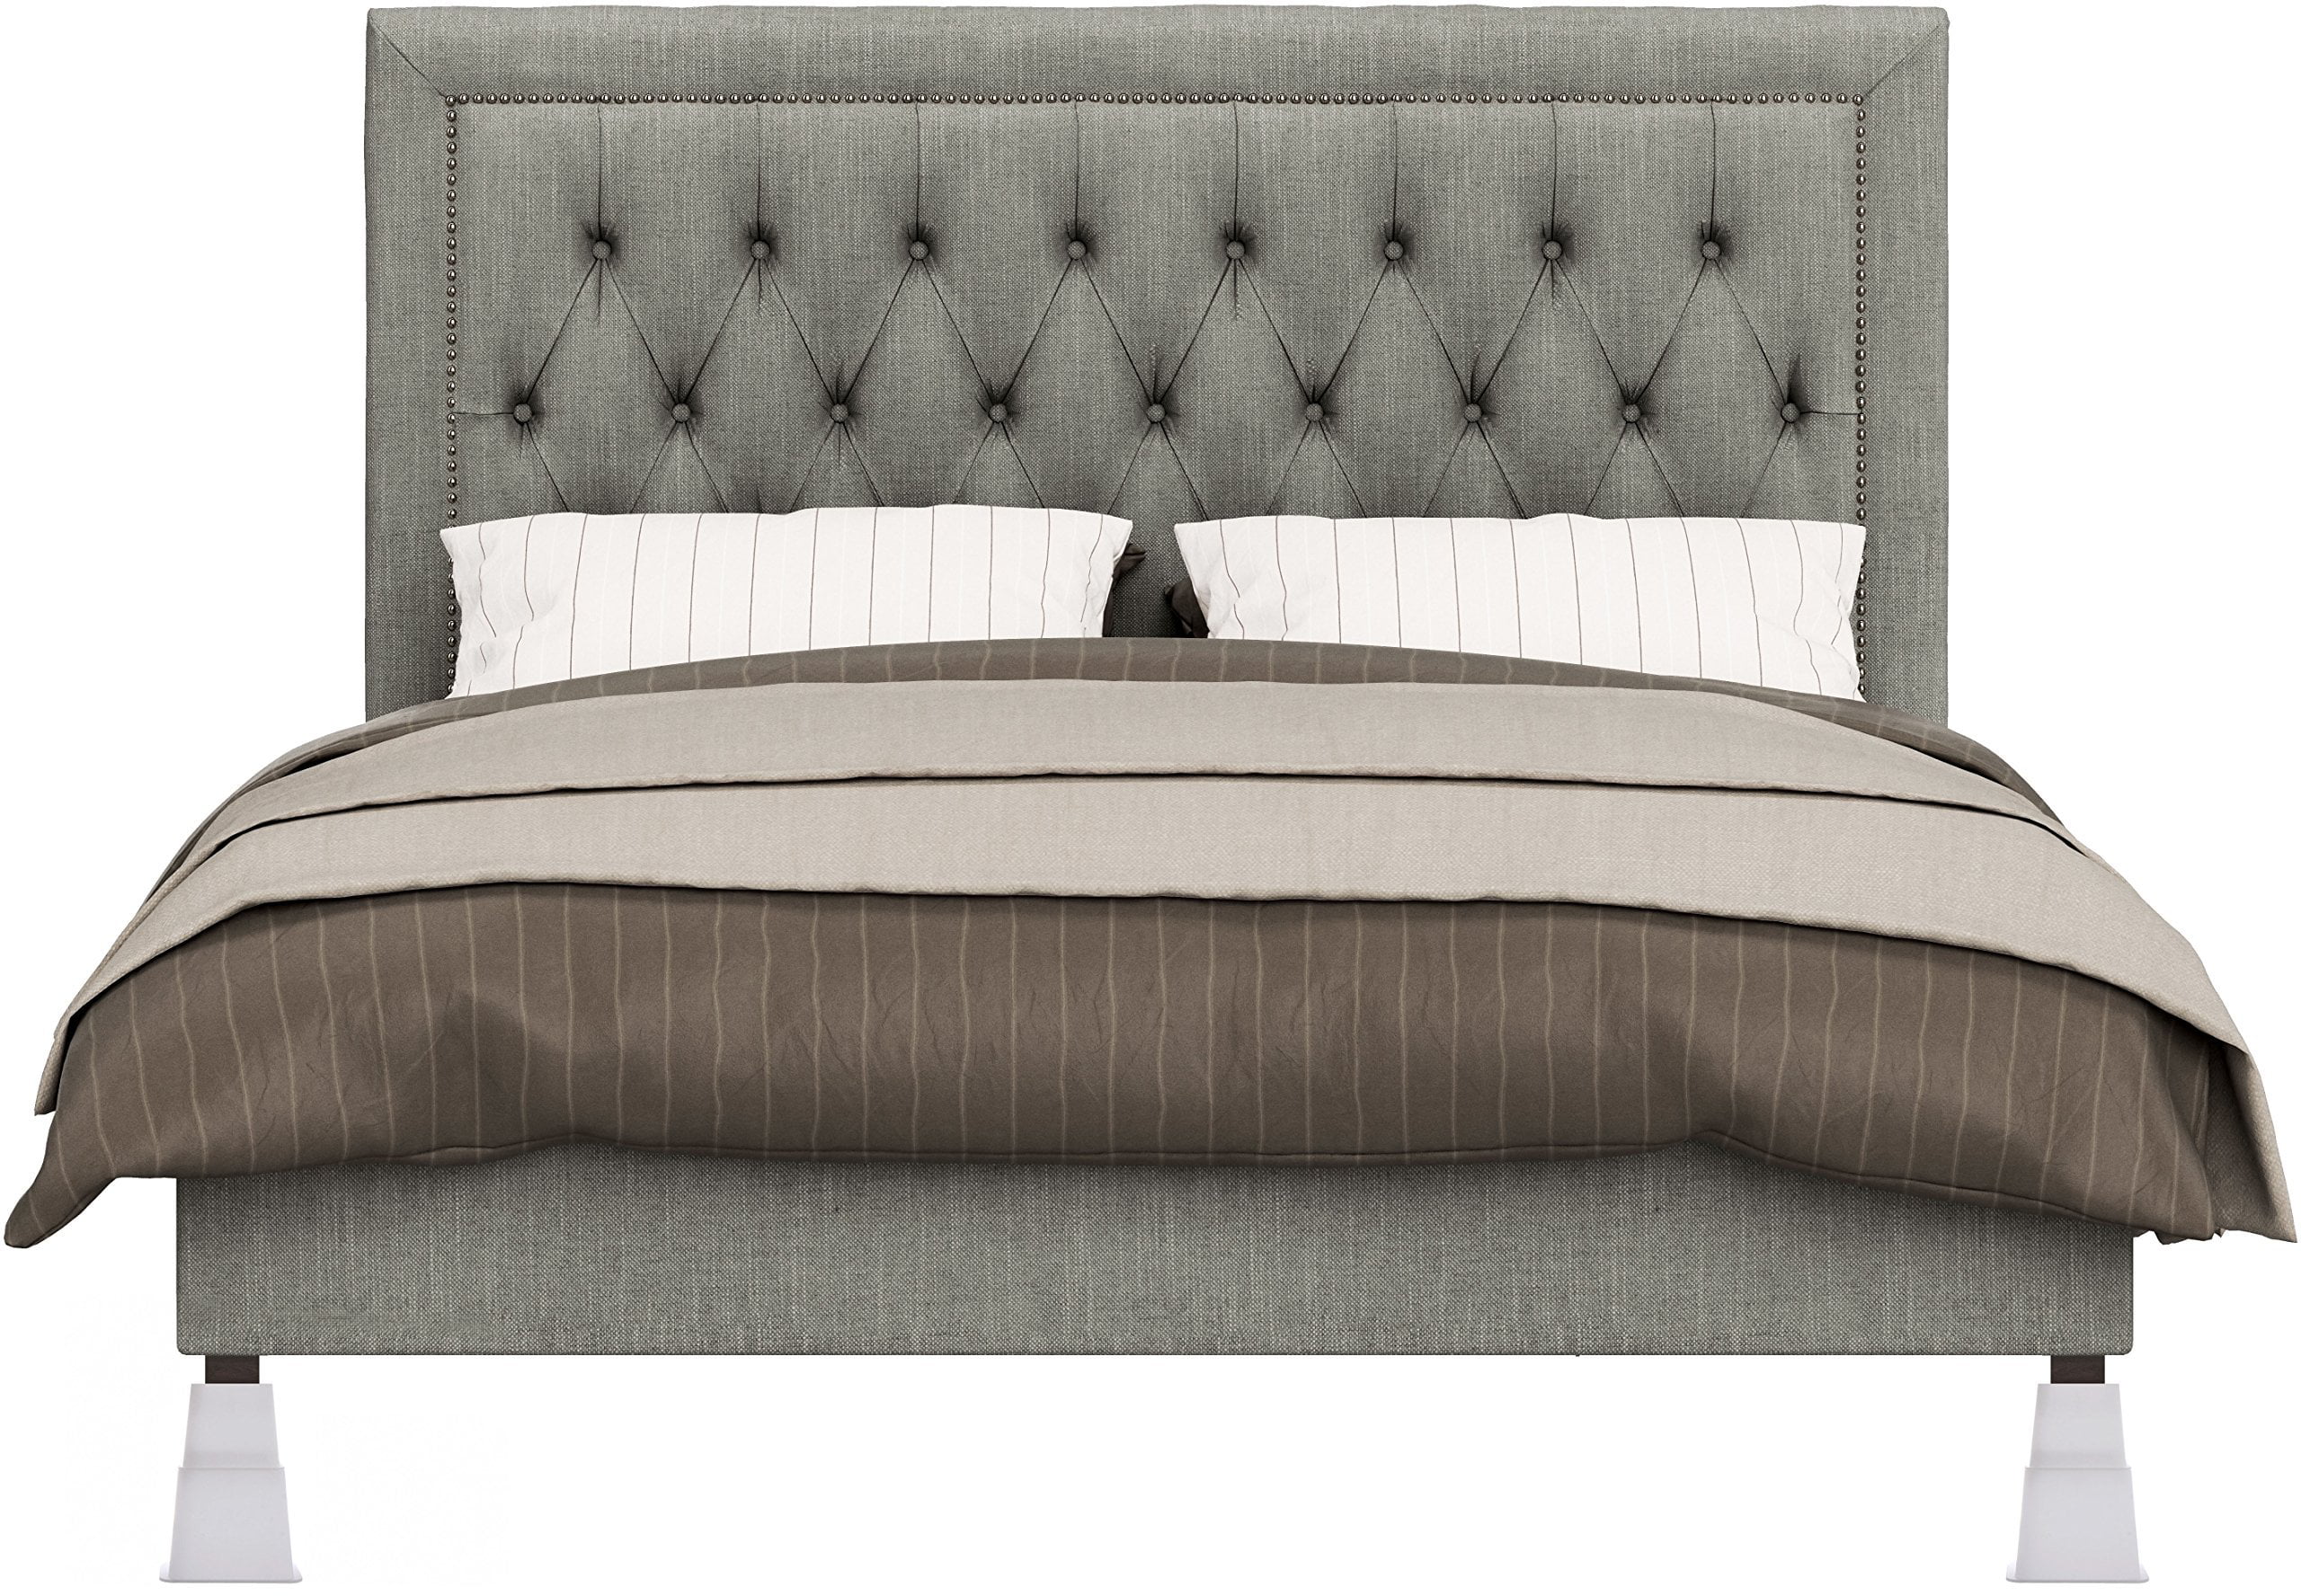 Bed and Furniture Riser Riser bed Utopia Bedding Riser feet for beds bianco Adjustable Riser Furniture Set of 8 